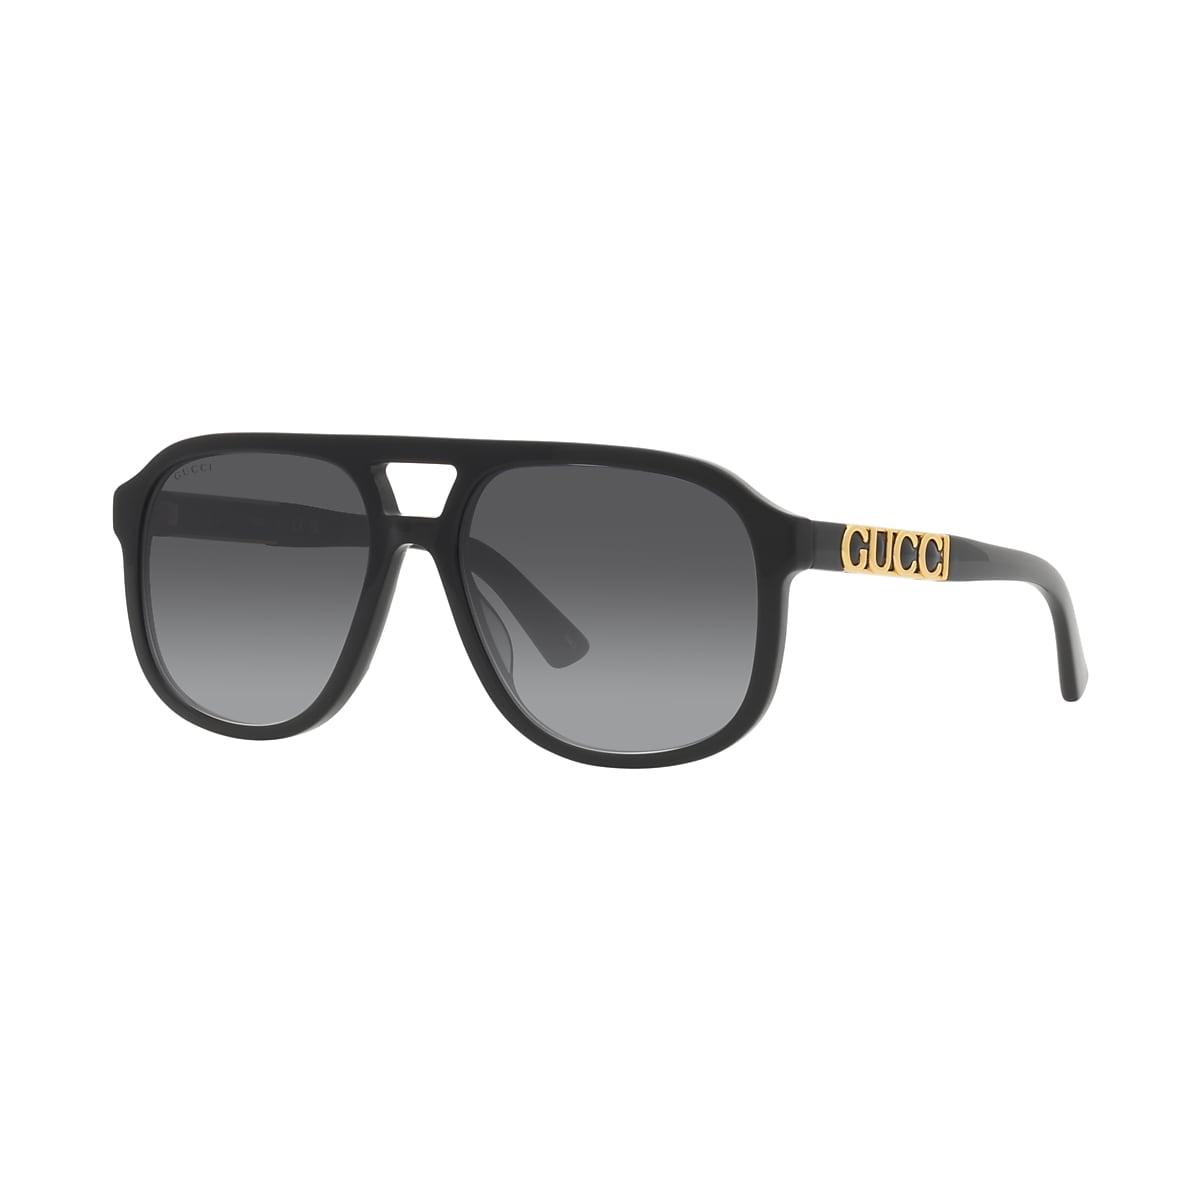 Gucci GG1188S 58 Grey & Black Sunglasses | Sunglass Hut Canada